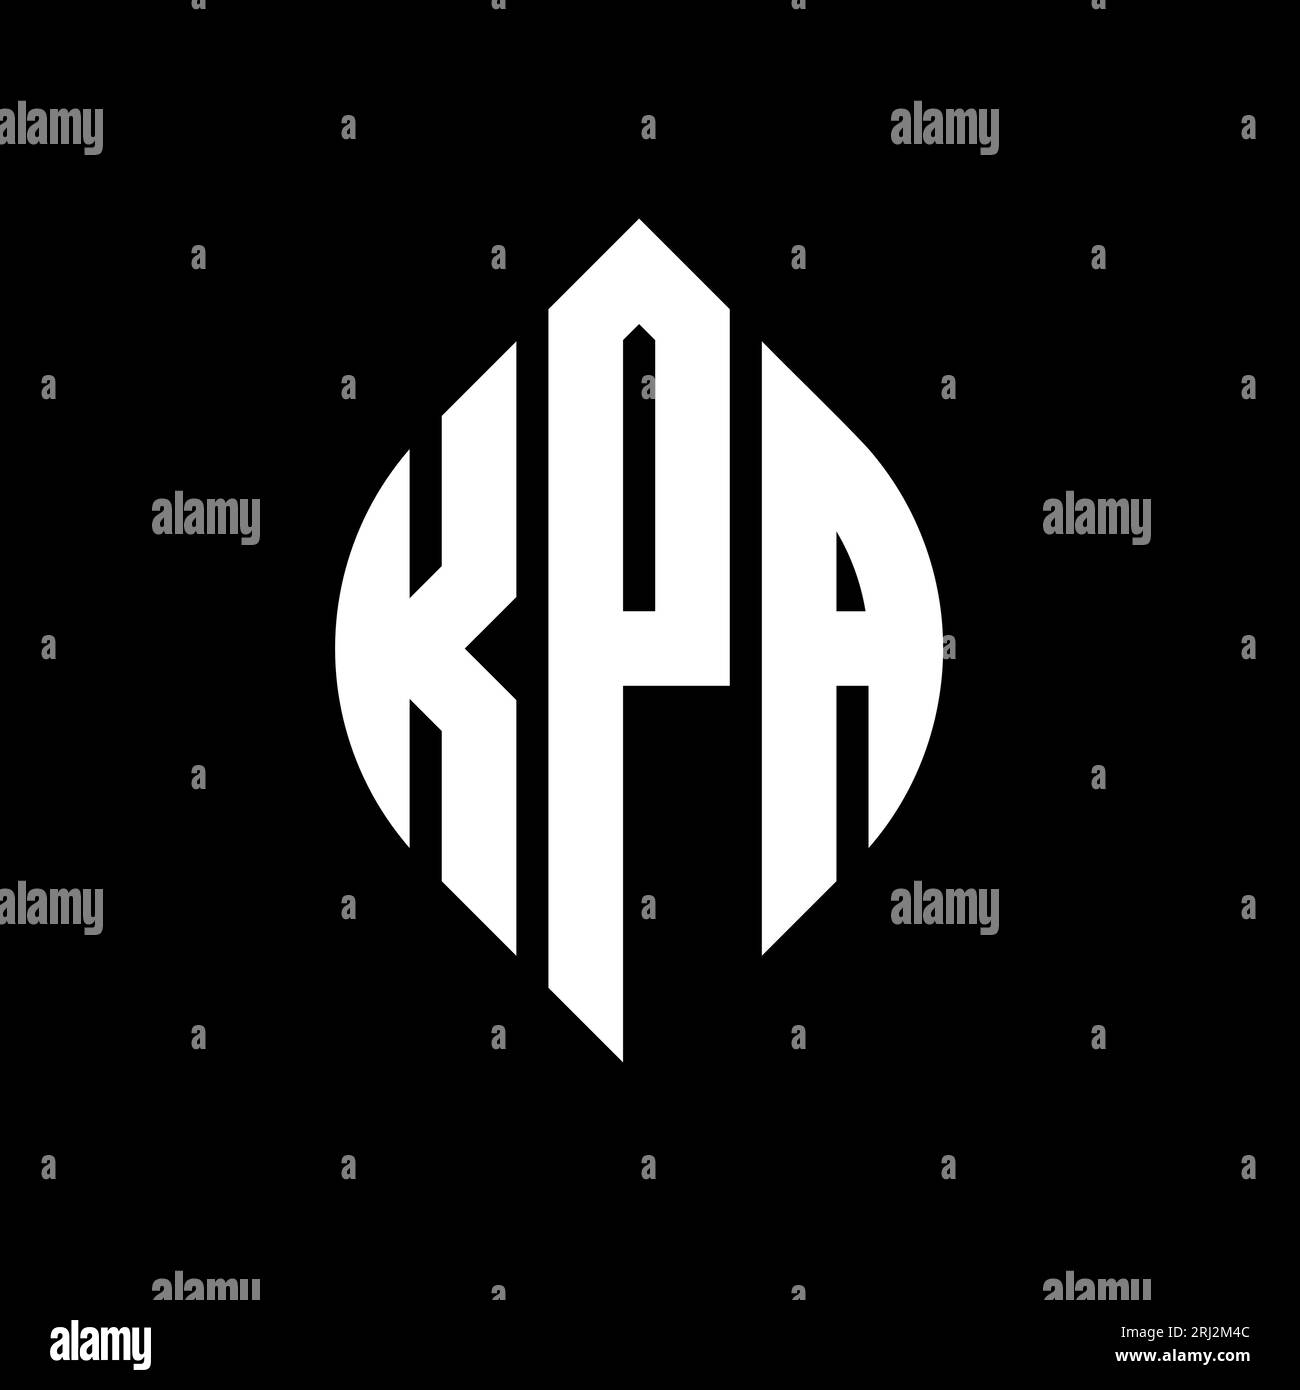 KPA-kreisförmiges Logo mit Kreis- und Ellipsenform. KPA-Ellipsenbuchstaben im typografischen Stil. Die drei Initialen bilden ein kreisförmiges Logo. KPA CI Stock Vektor